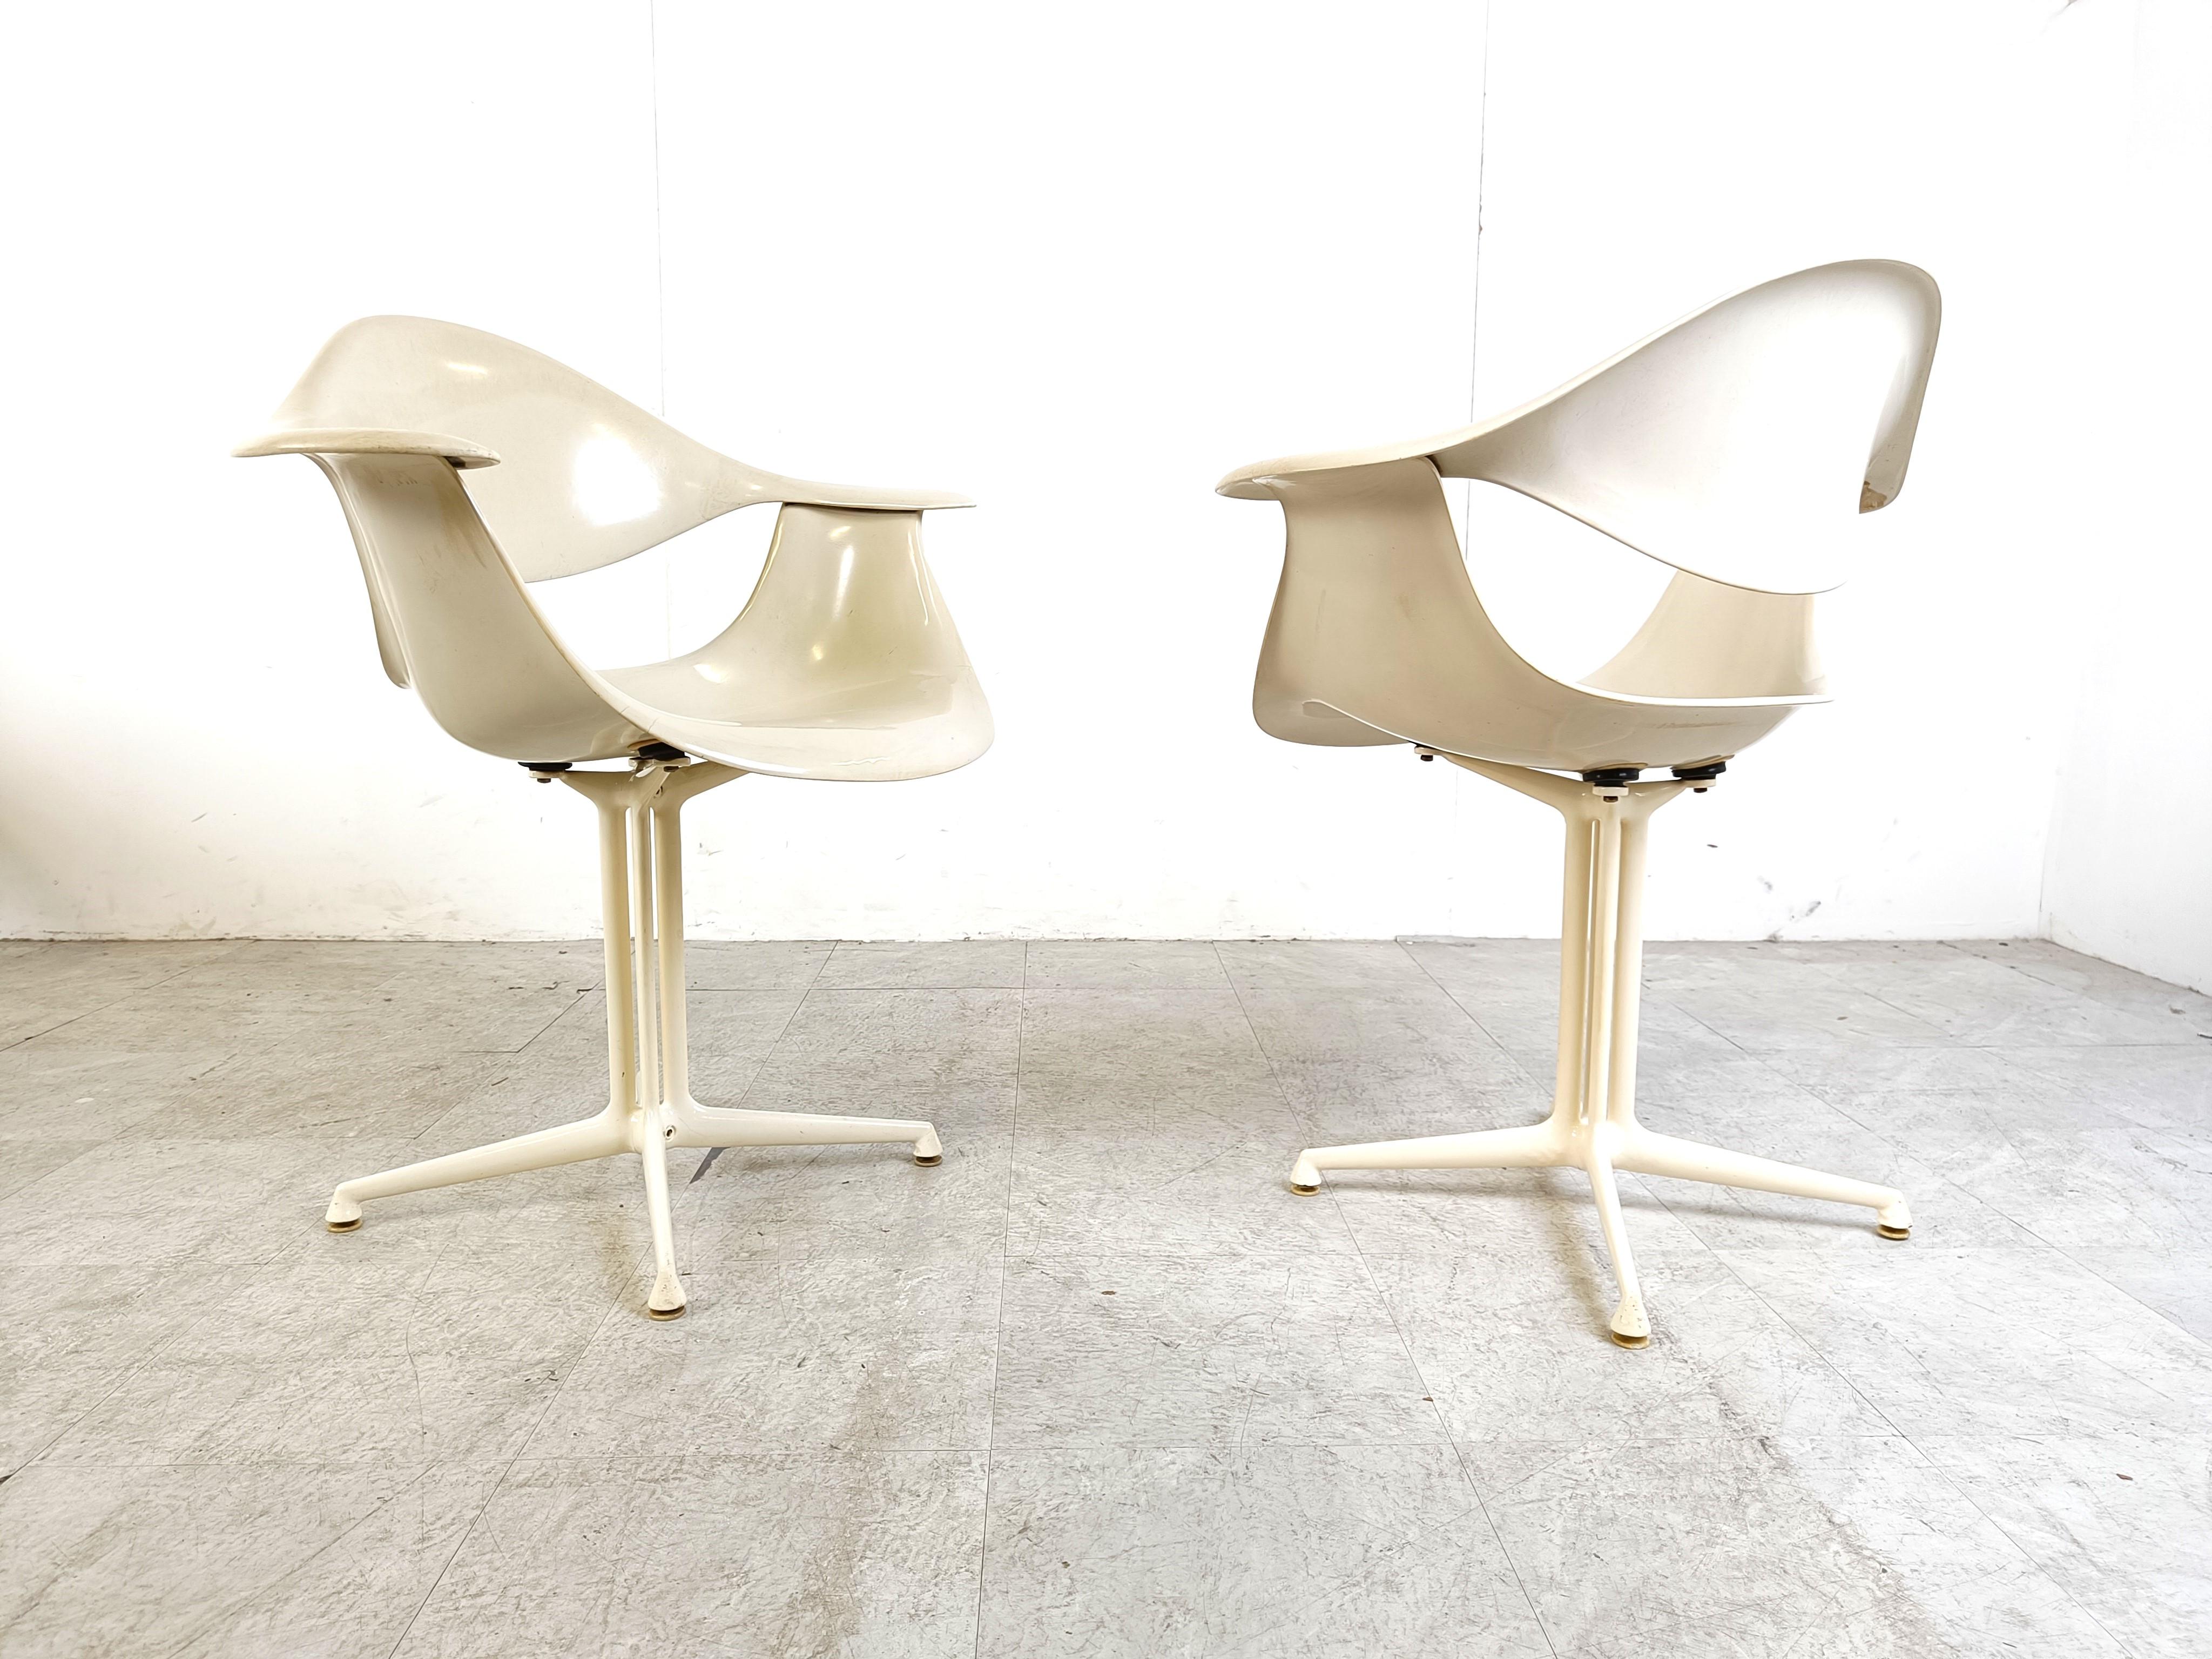 Satz von 4 sehr seltenen DAF-Sesseln, entworfen von George Nelson für Herman Miller.

Die Stühle bestehen aus Fiberglasschalen, die auf weiß lackierte Metallbeine montiert sind.

Sehr ähnlich den La fonda Stühlen von Eames.

Diese frühen Exemplare